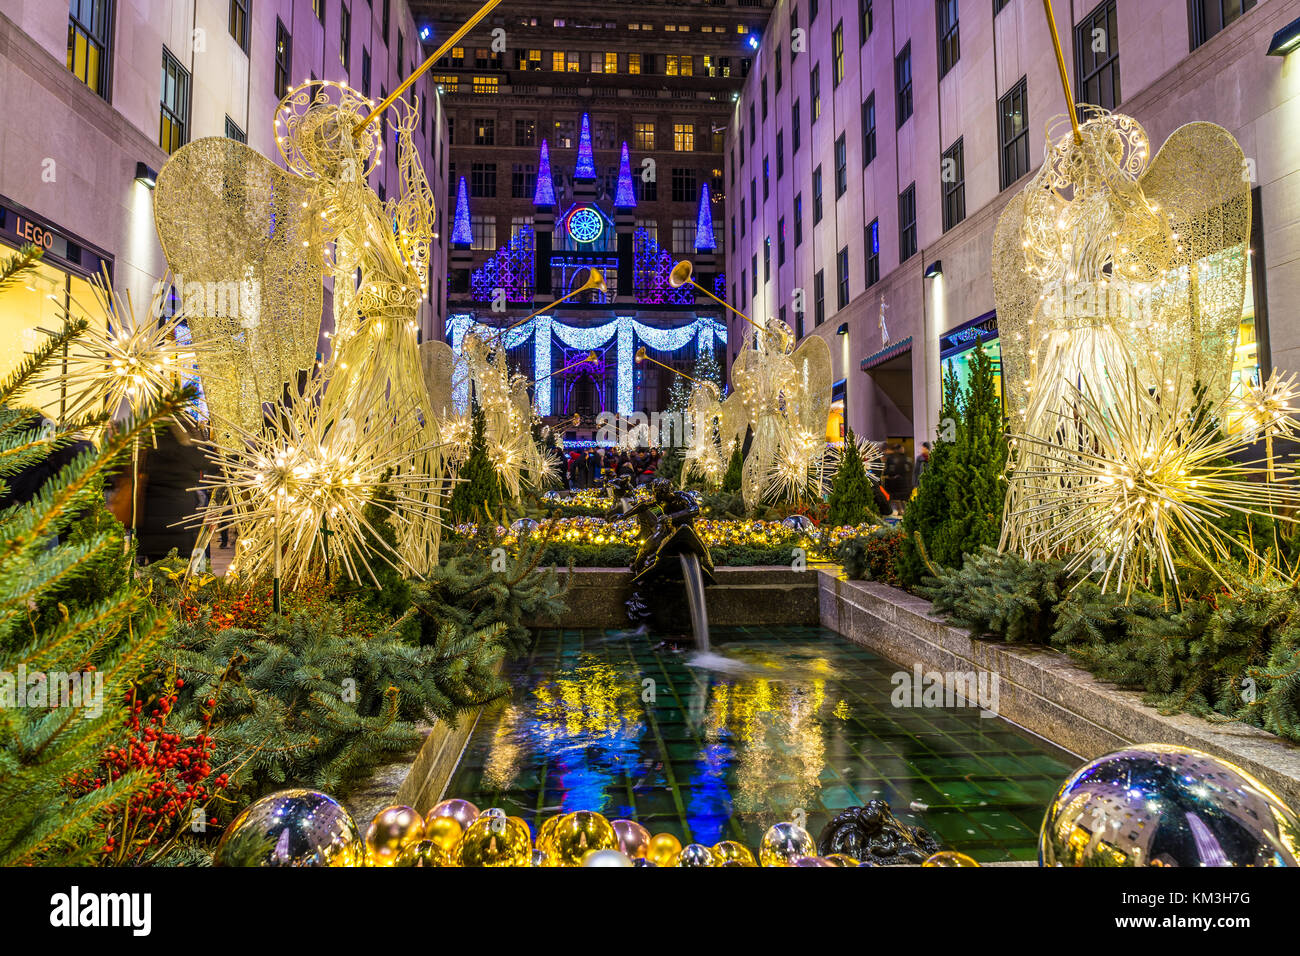 New York, NY usa - 26 nov, 2017. temporada navideña en la ciudad de Nueva York, el Rockefeller Center Foto de stock